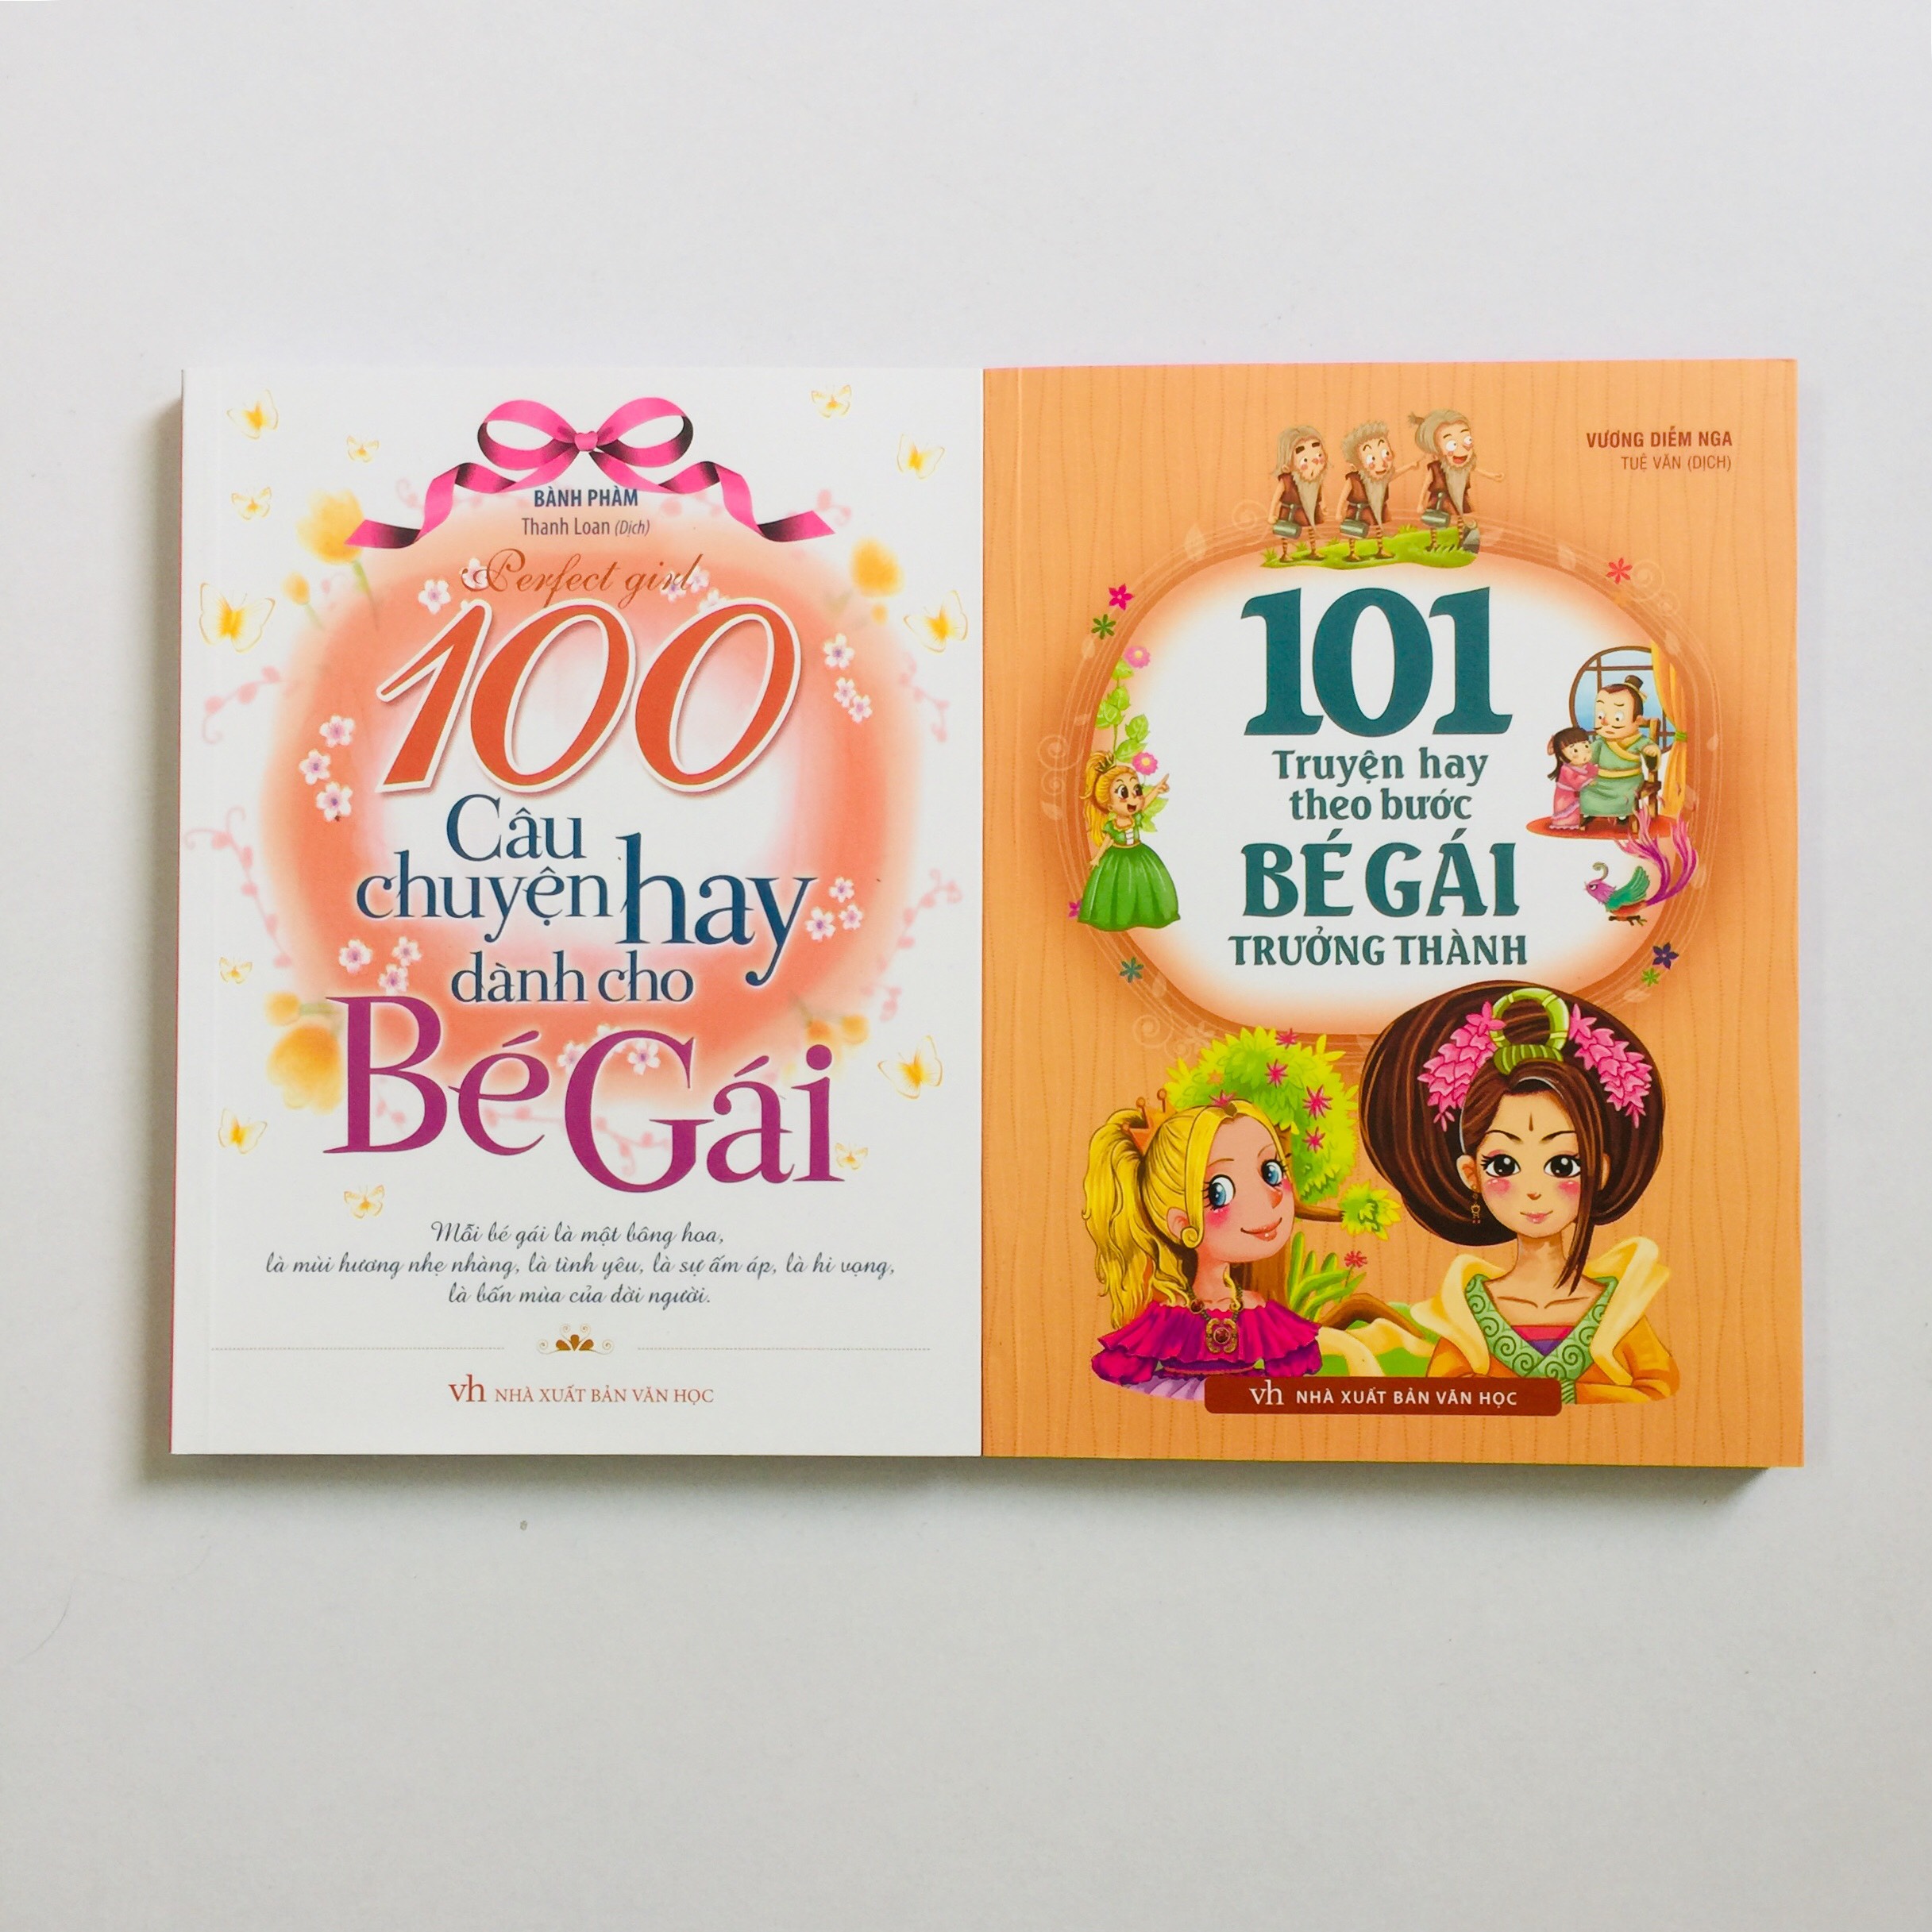 Combo 2 cuốn truyện dành cho bé gái 100 Câu Chuyện Hay Dành Cho Bé Gái - 101 Truyện hay theo bước BÉ GÁI trưởng thành